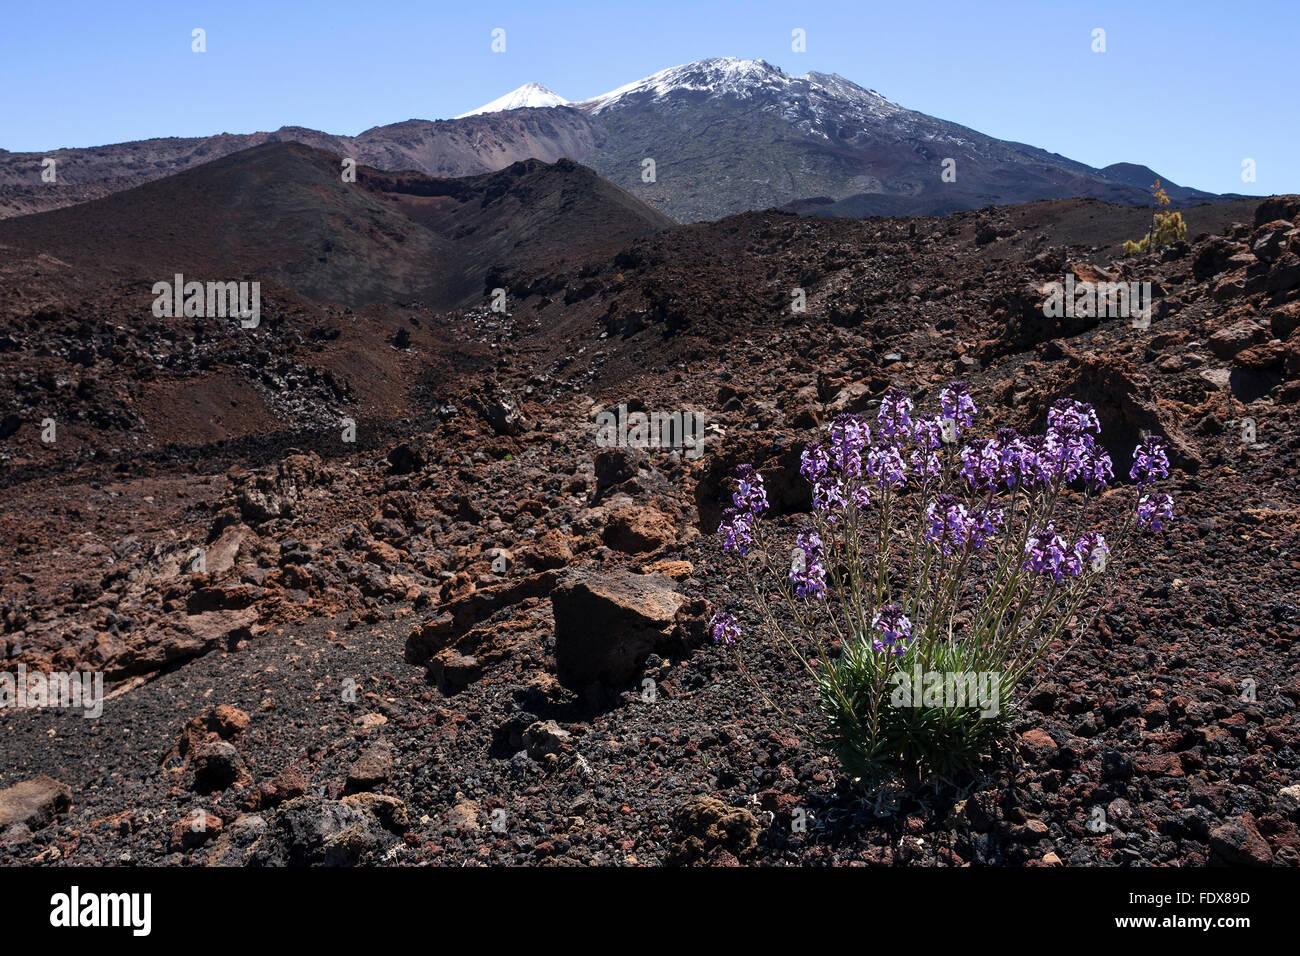 Paisaje volcánico, delantero alhelí (Erysimum), detrás del pico del nevado Teideand Pico Viejo, el Parque Nacional del Teide Foto de stock